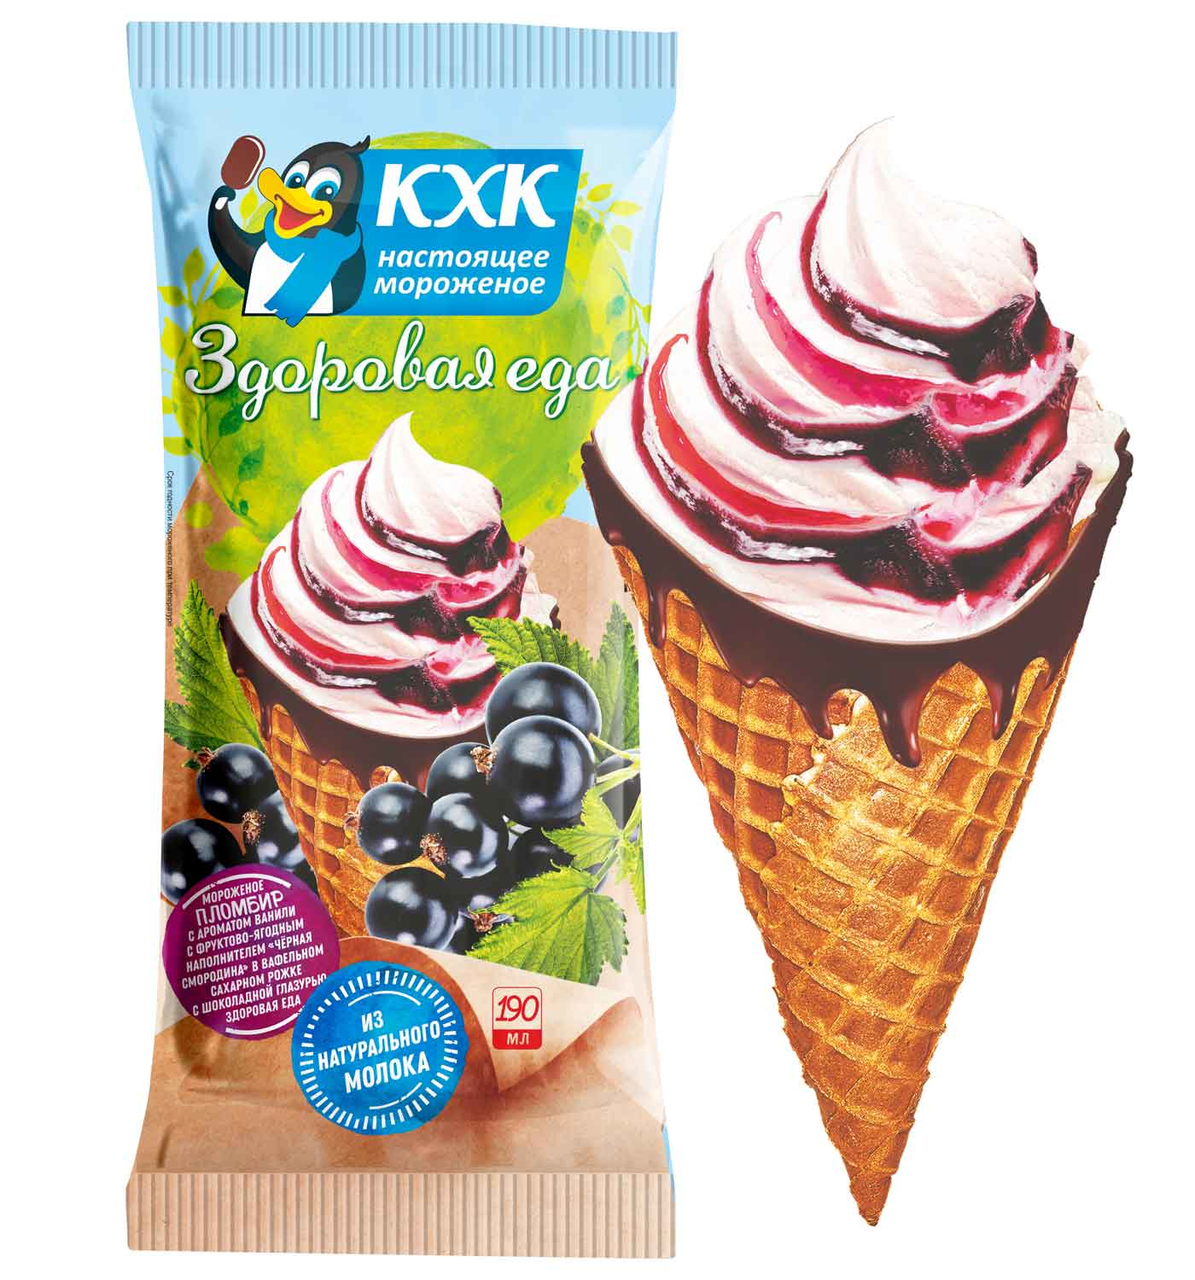 Мороженое Кировского хладокомбината здоровая еда